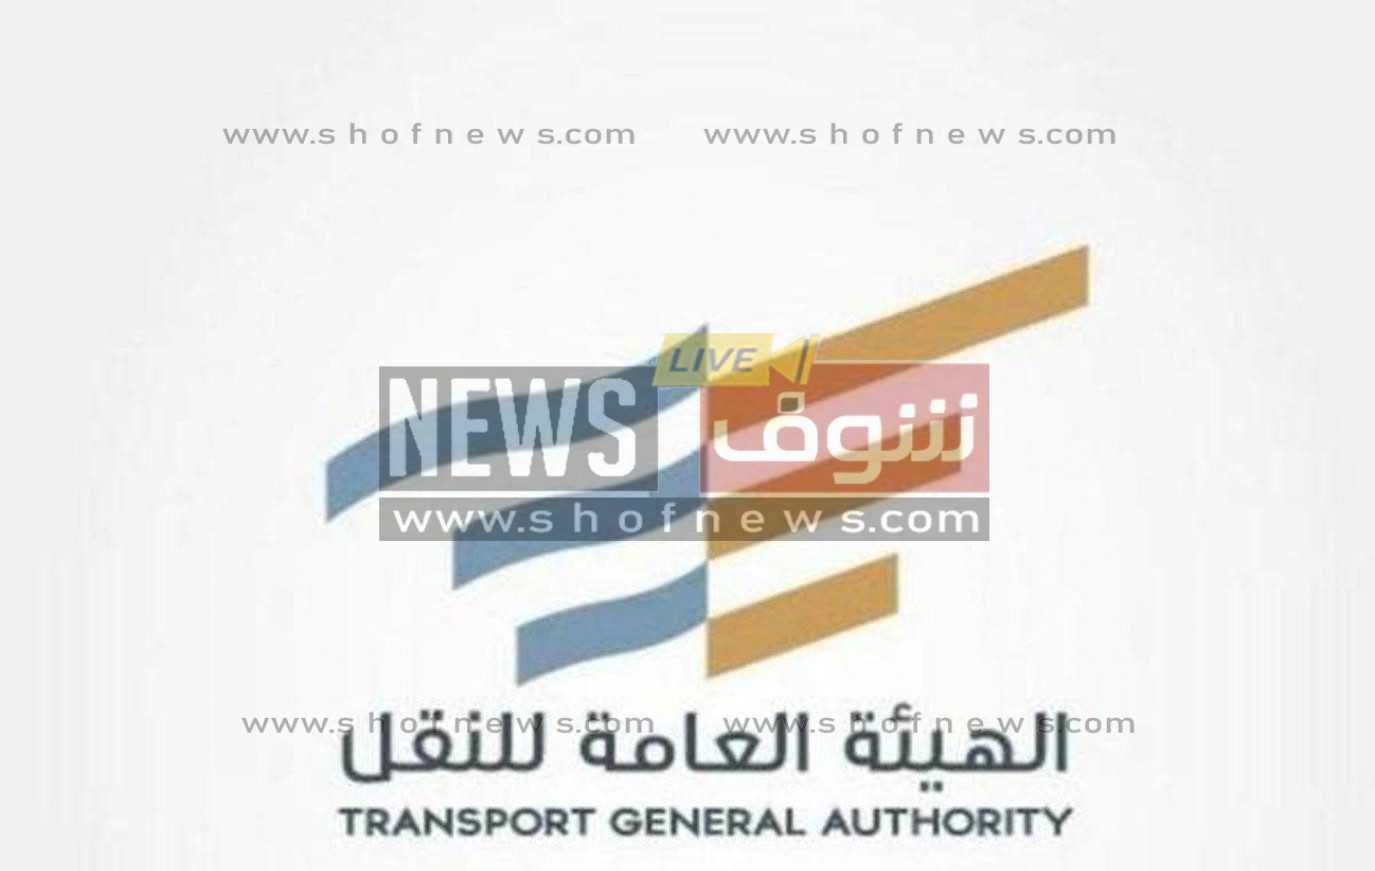 الهيئة العامة للنقل بالسعودية ، لائحة نشاط الأجرة الهيئة العامة للنقل بالسعودية